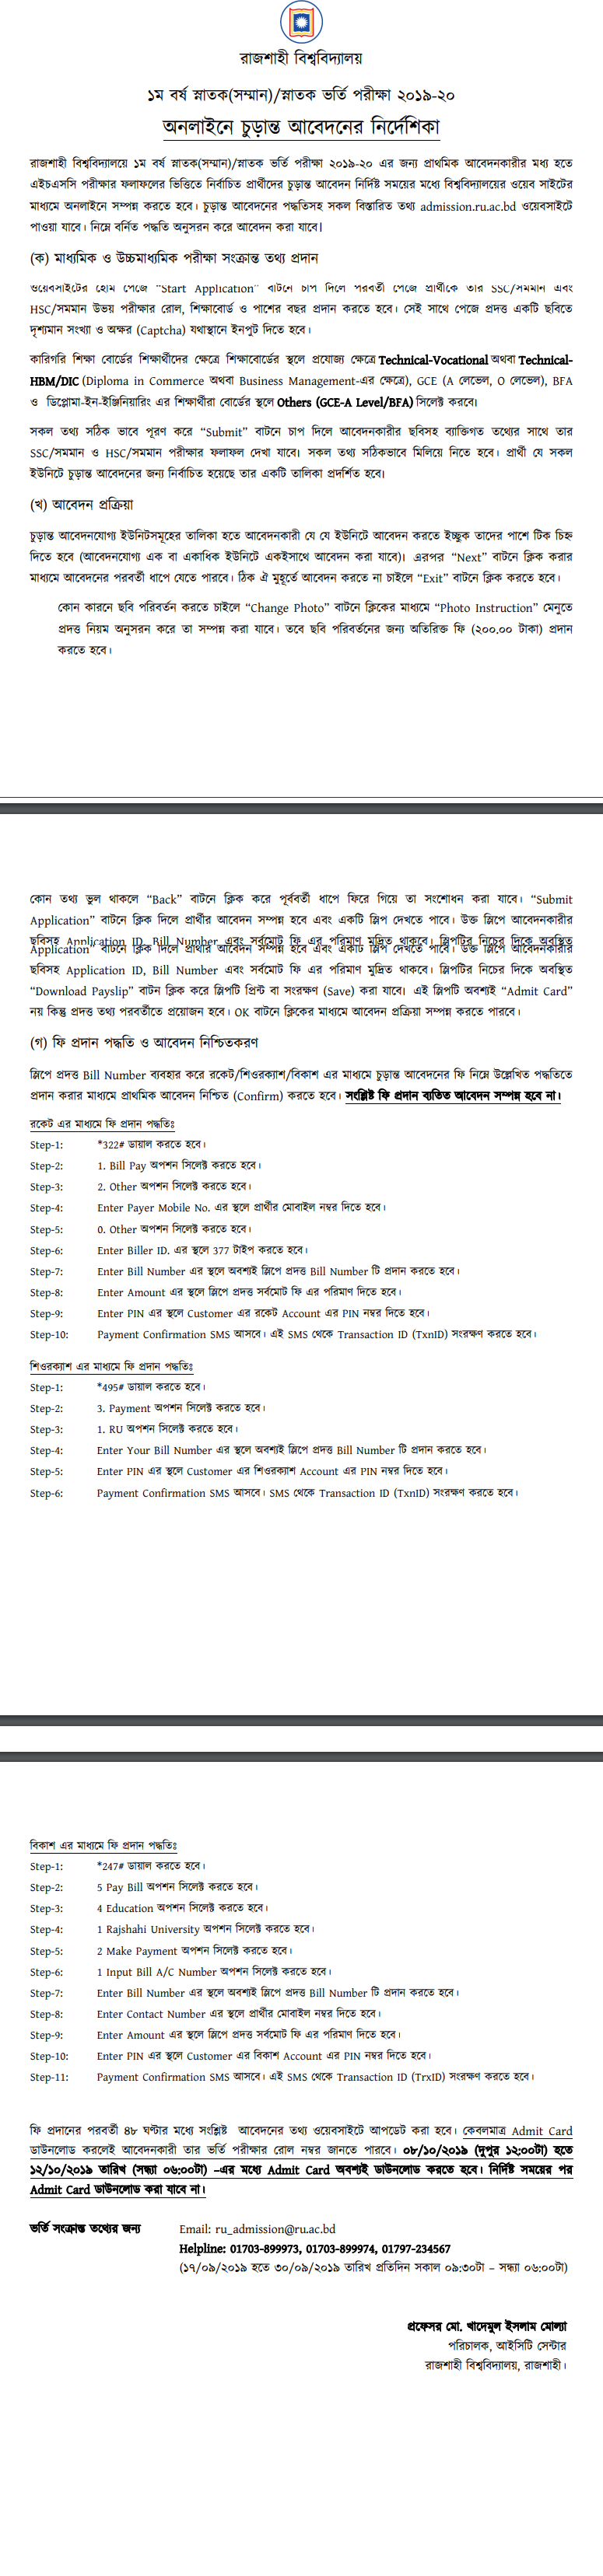 রাজশাহী বিশ্ববিদ্যালয়ের চূড়ান্ত আবেদন প্রক্রিয়া গাইডলাইন ২০১৯-২০ || Rajshahi University Final Application Process Guideline 2019-20